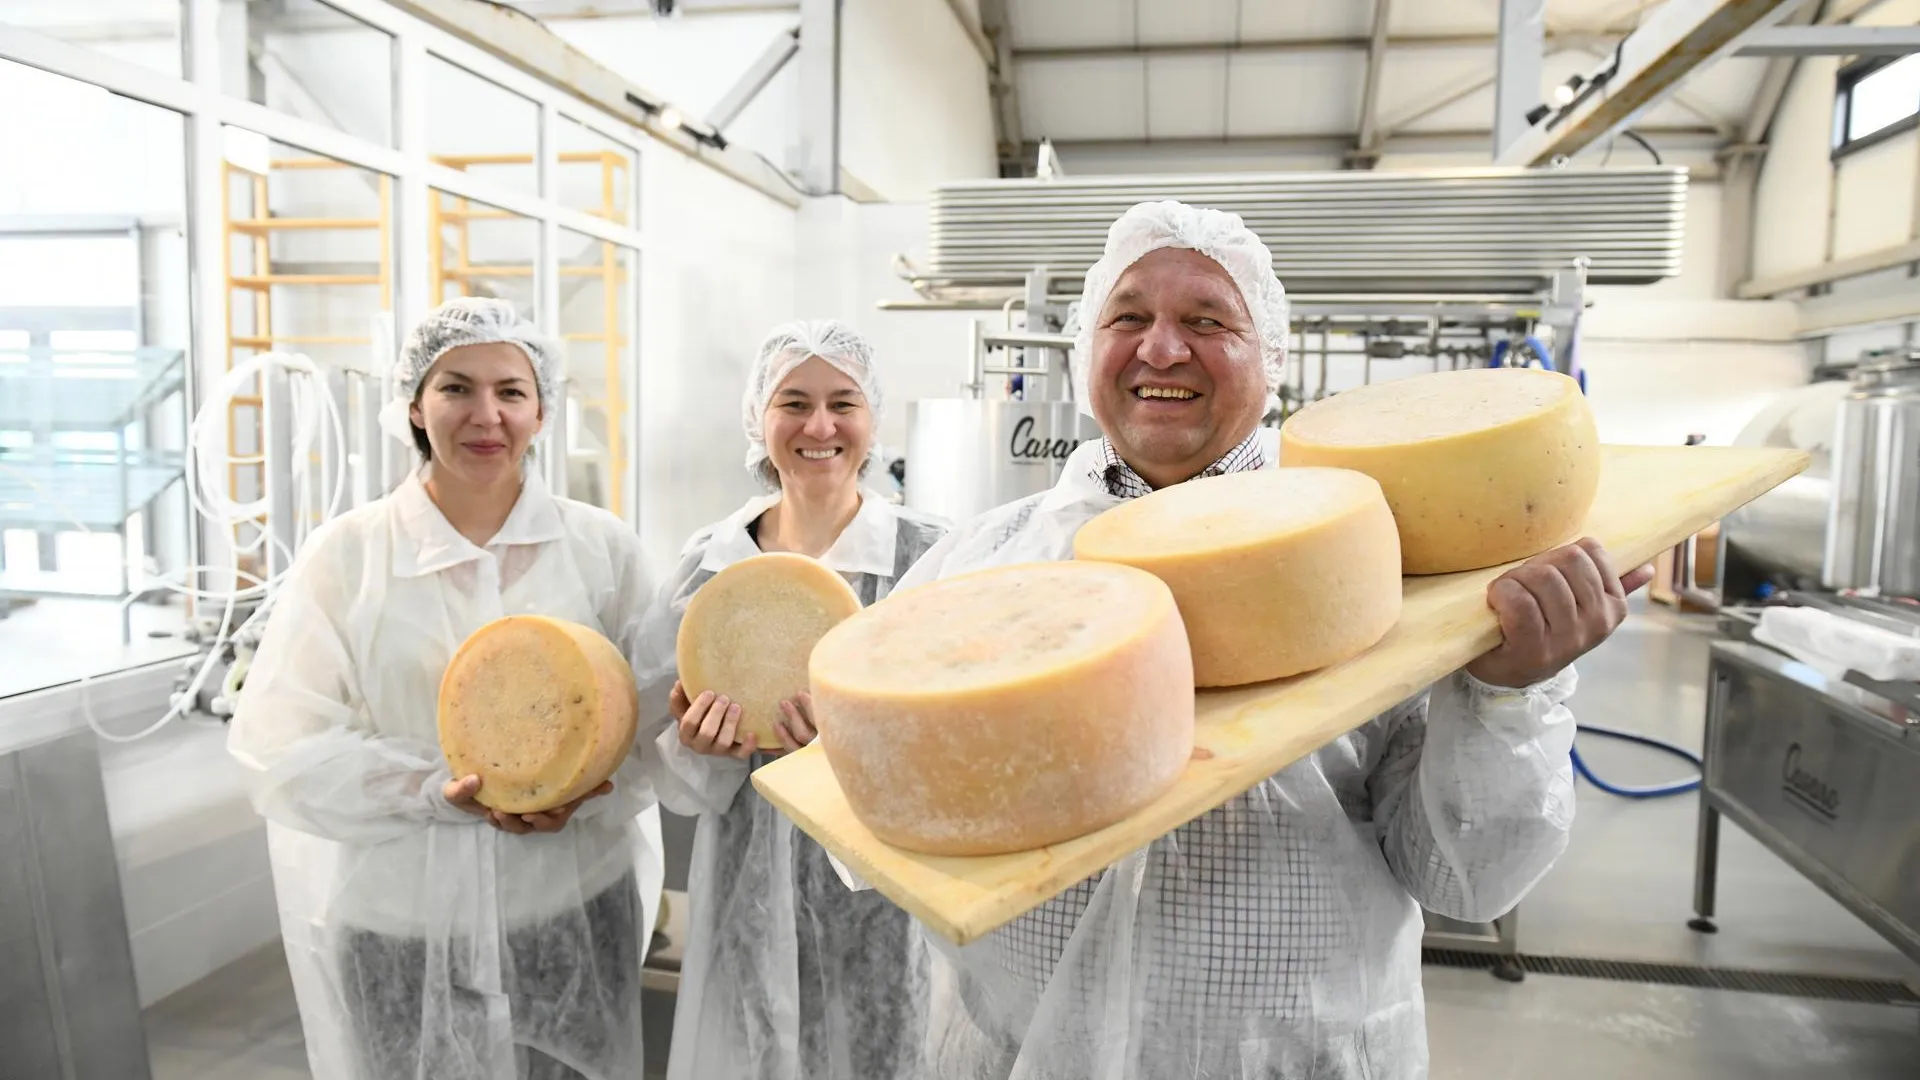 21 сорт сыра производит крестьянско-фермерское хозяйство из Дмитровского округа